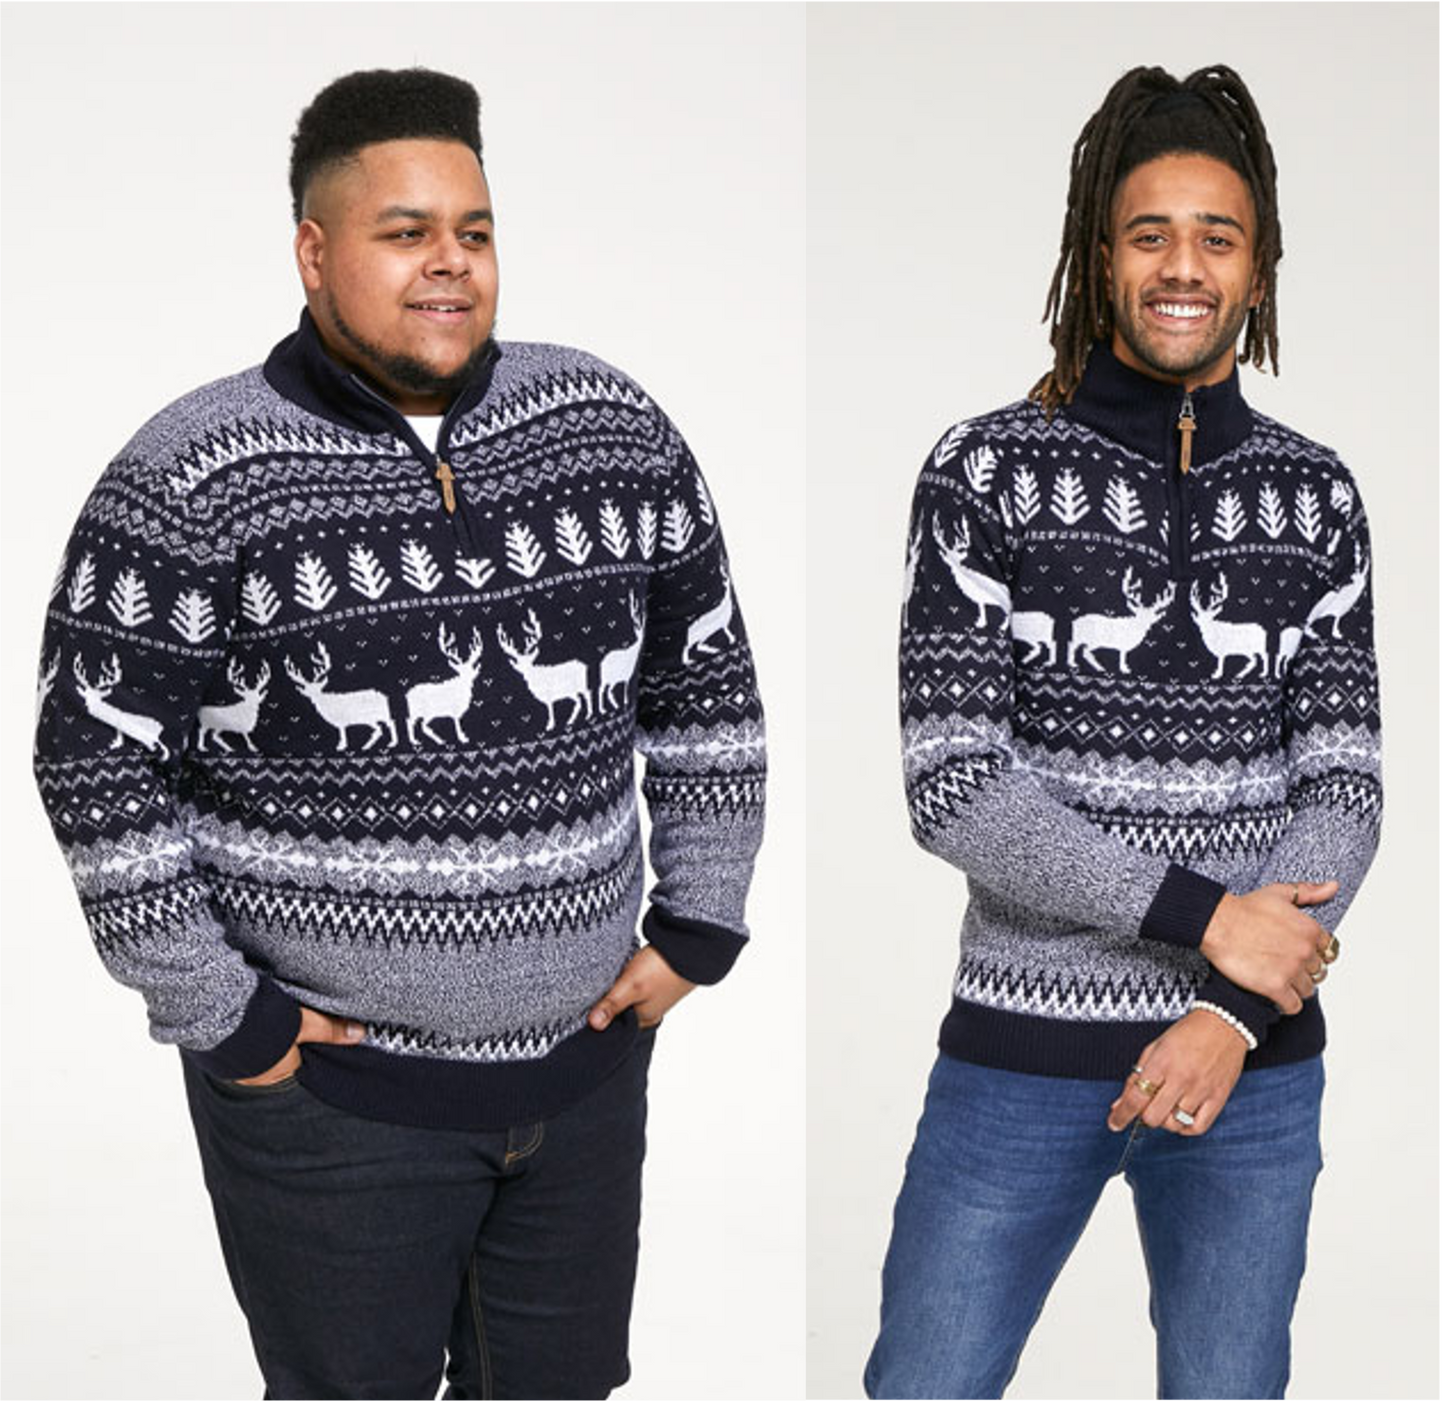 Duke D555 1/4 Zip Reindeer All-Over Print Knit Christmas Sweater